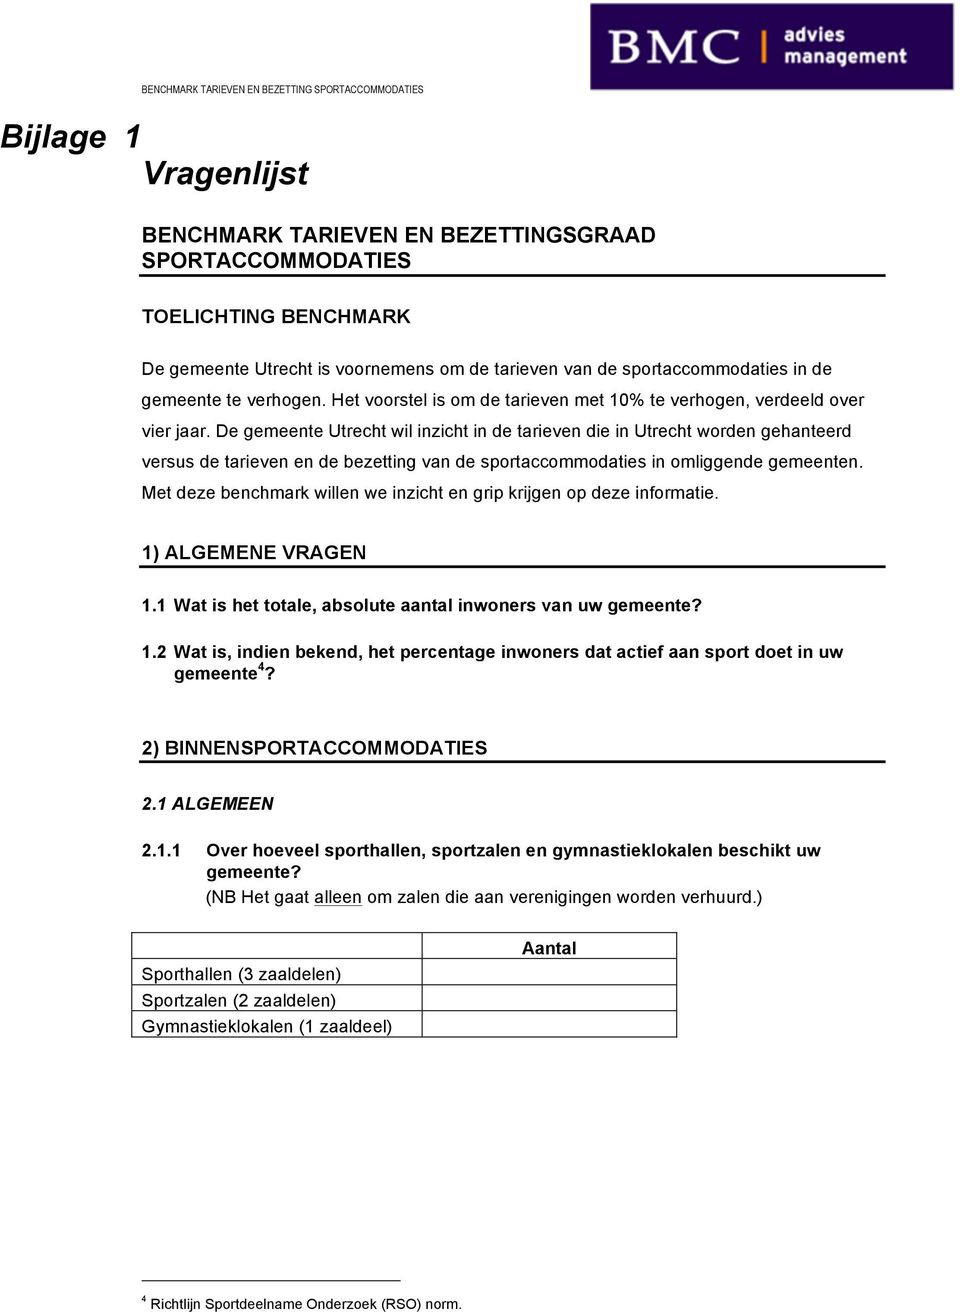 De gemeente Utrecht wil inzicht in de tarieven die in Utrecht worden gehanteerd versus de tarieven en de bezetting van de sportaccommodaties in omliggende gemeenten.